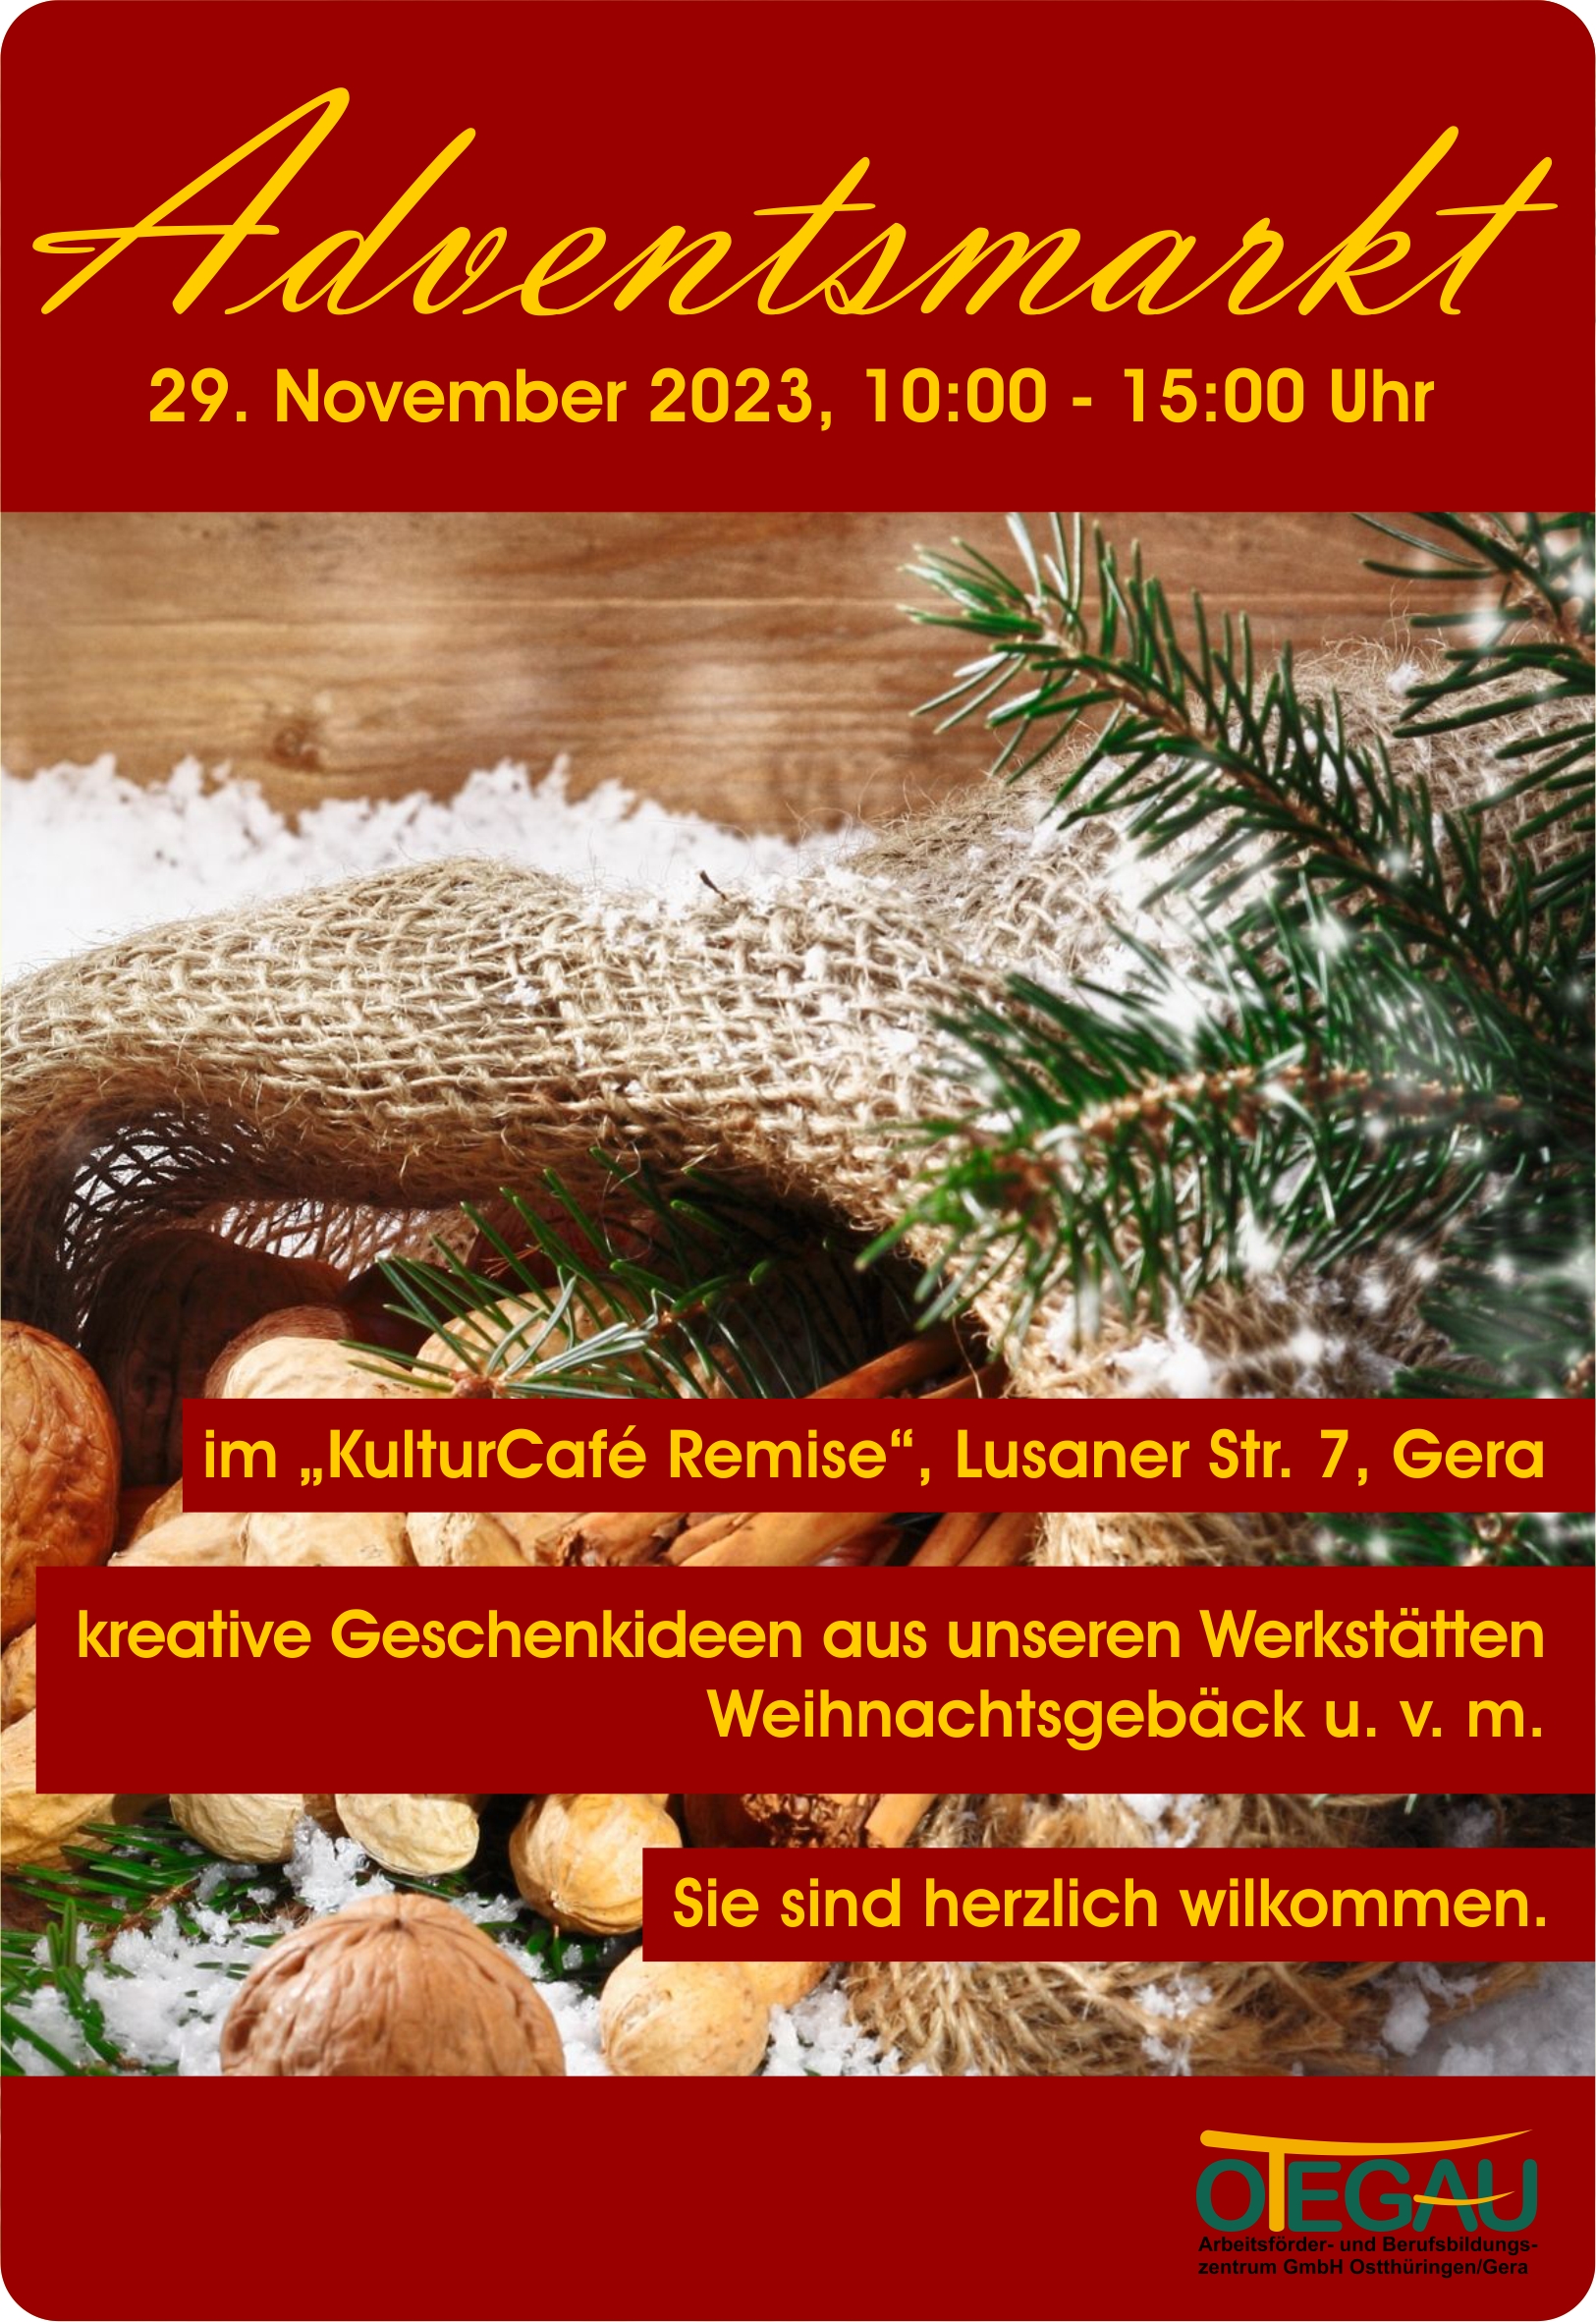 Adventsmarkt am 29. November 2023, 10 bis 15 Uhr im „KulturCafé Remise“, Lusaner Str. 7, Gera. -kreative Geschenkideen aus unseren Werkstätten Weihnachtsgebäck u. v. m. Sie sind herzlich wilkommen.